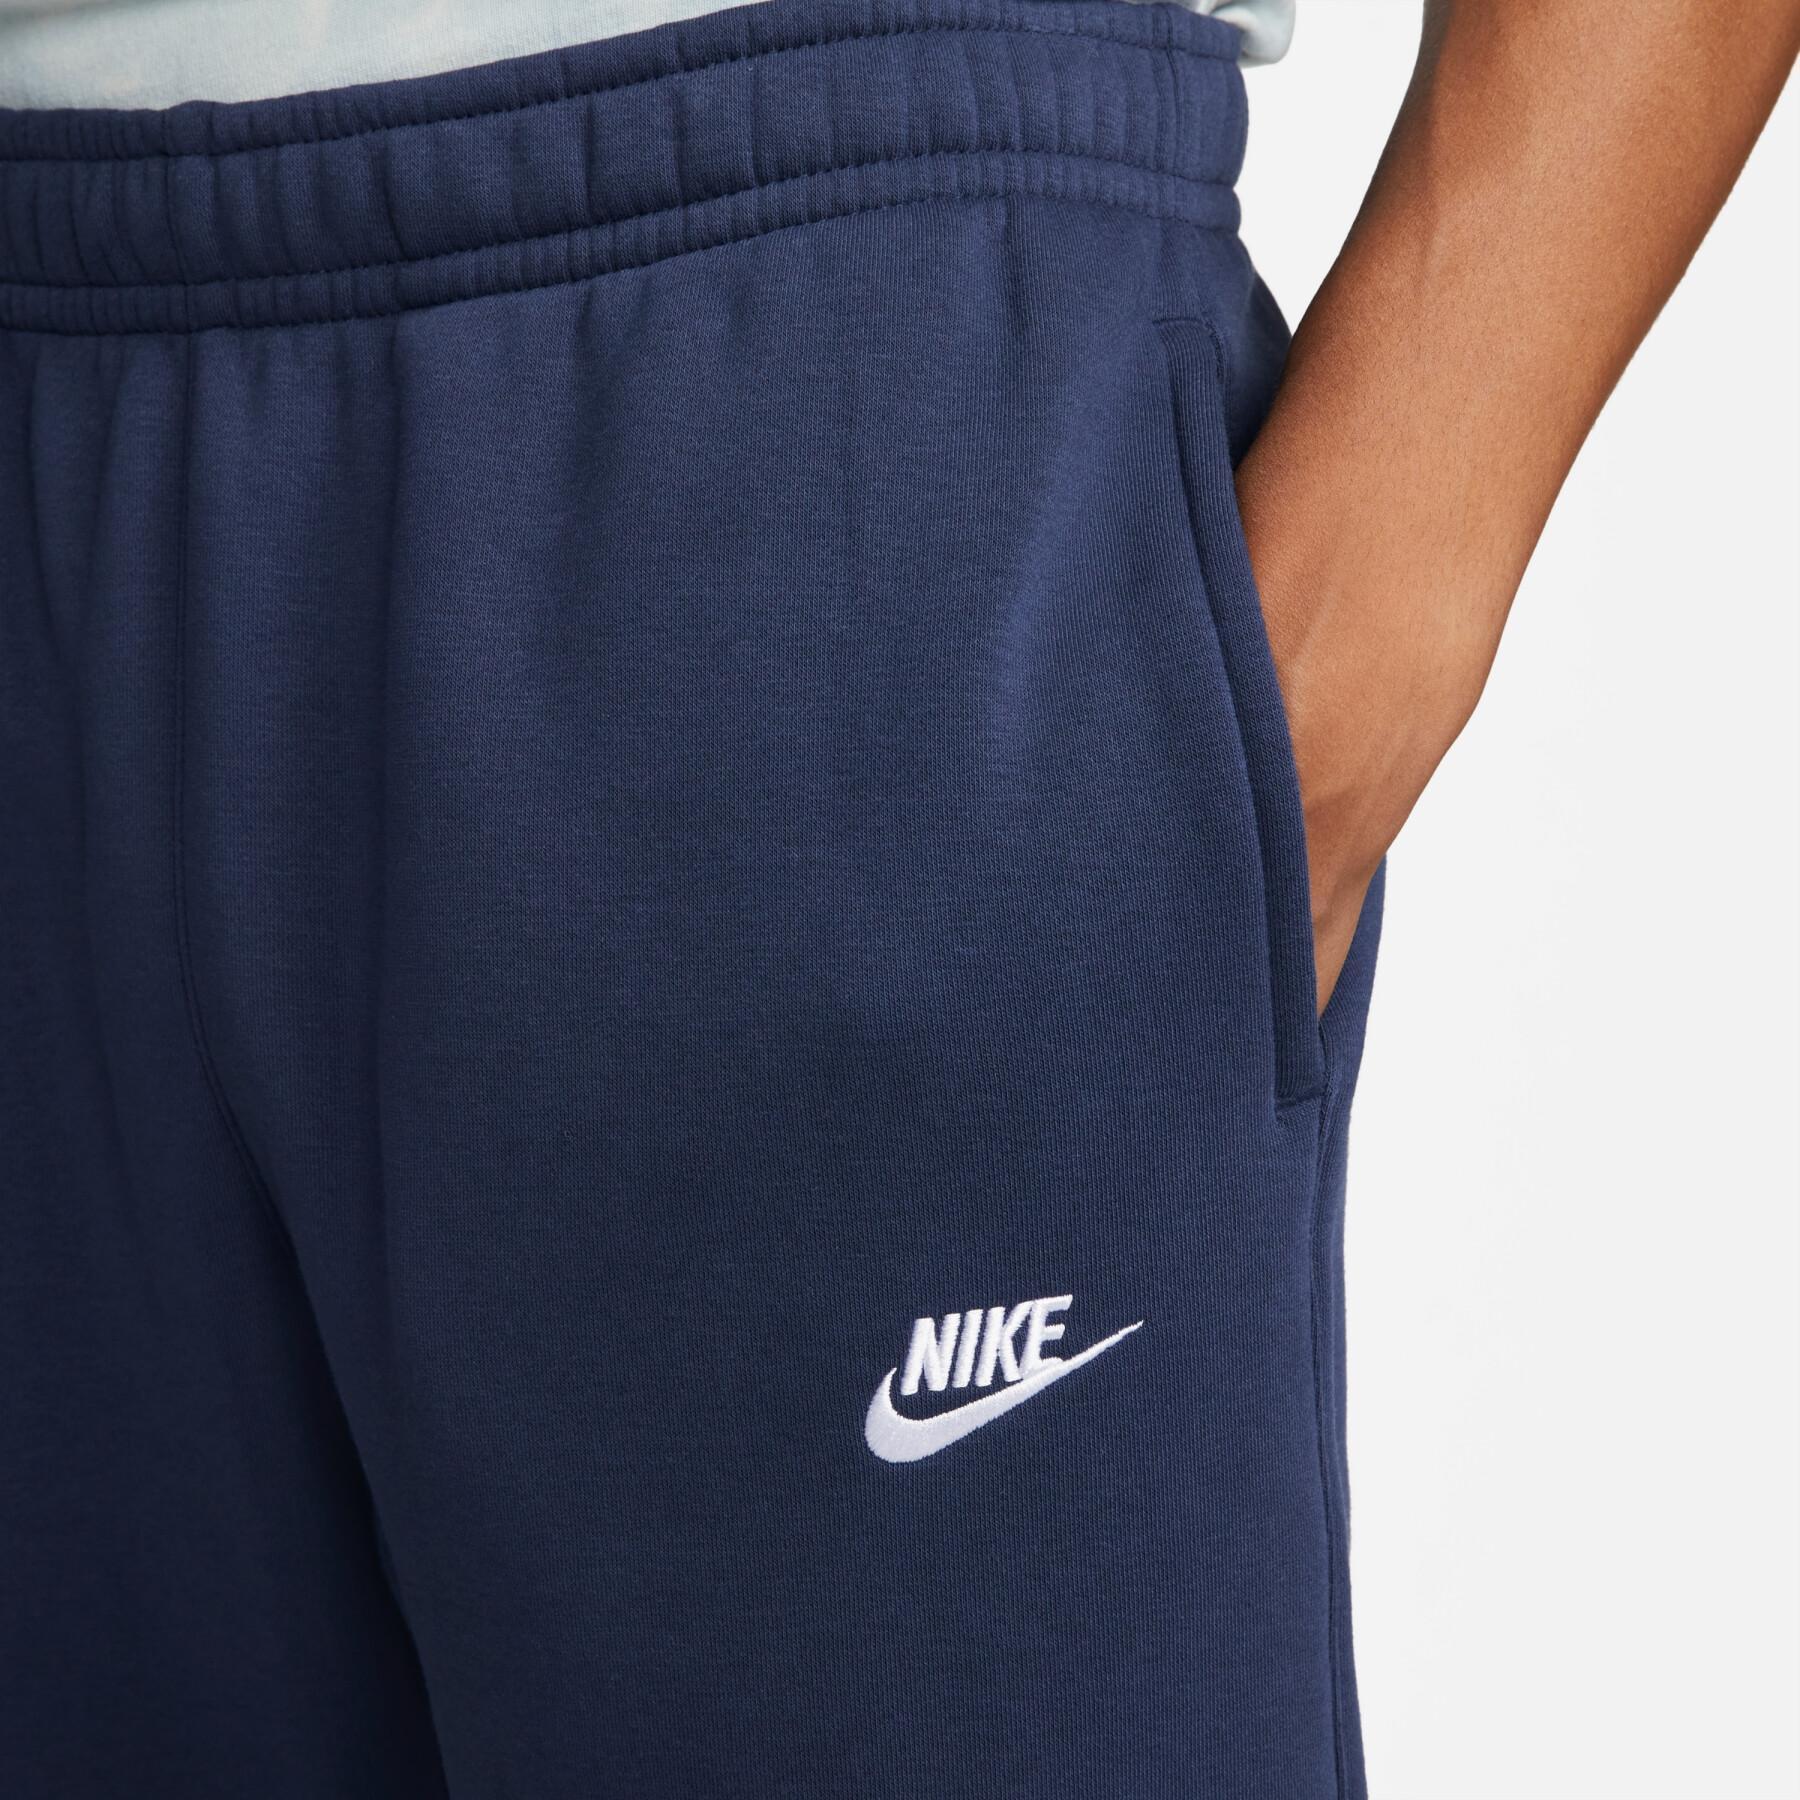 Siatkowy strój do joggingu Nike Sportswear Club